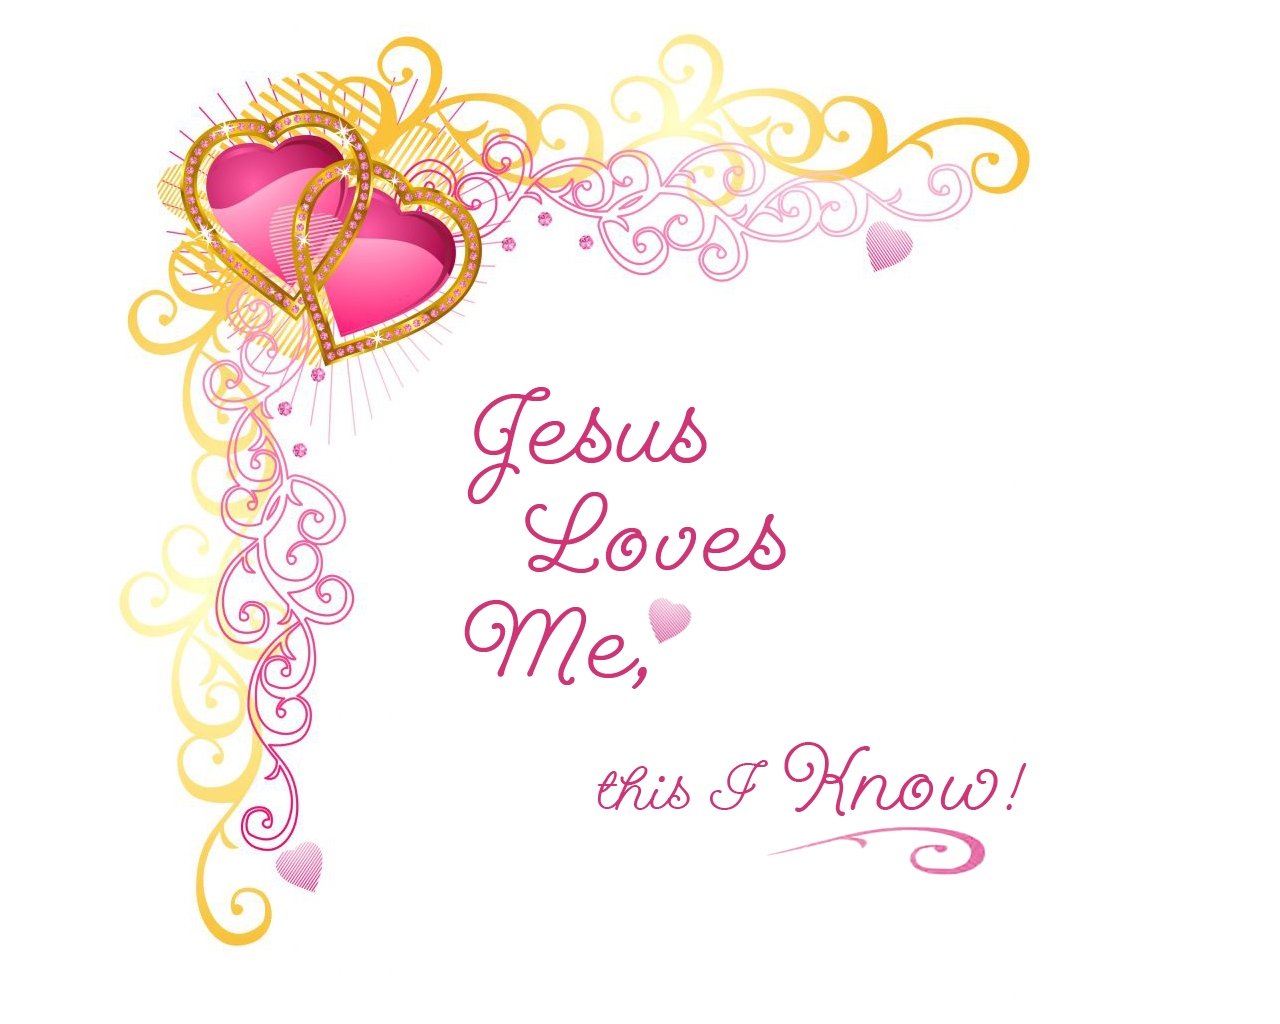 28+] Jesus Loves Me Wallpapers - WallpaperSafari